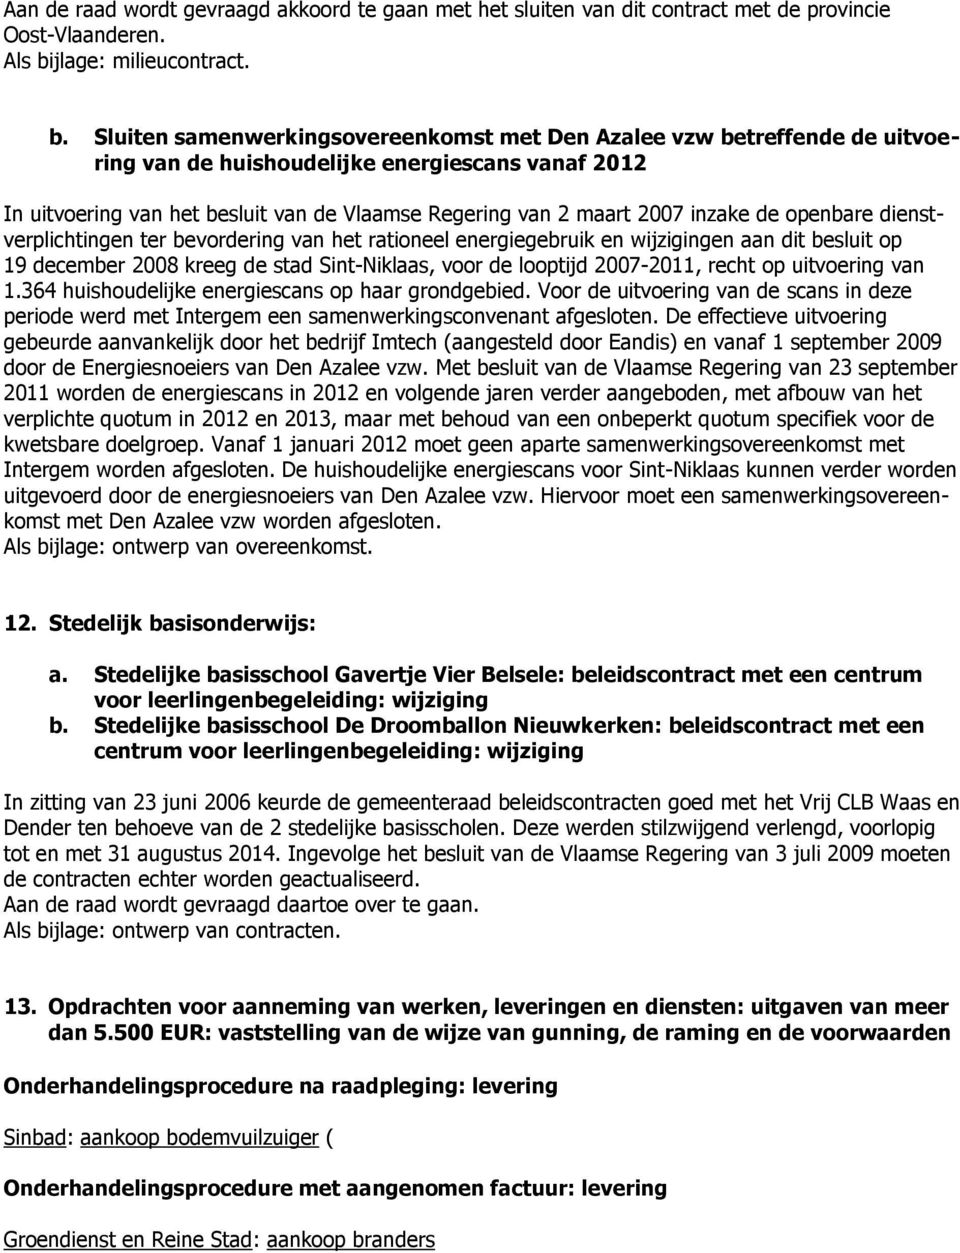 Sluiten samenwerkingsovereenkomst met Den Azalee vzw betreffende de uitvoering van de huishoudelijke energiescans vanaf 2012 In uitvoering van het besluit van de Vlaamse Regering van 2 maart 2007